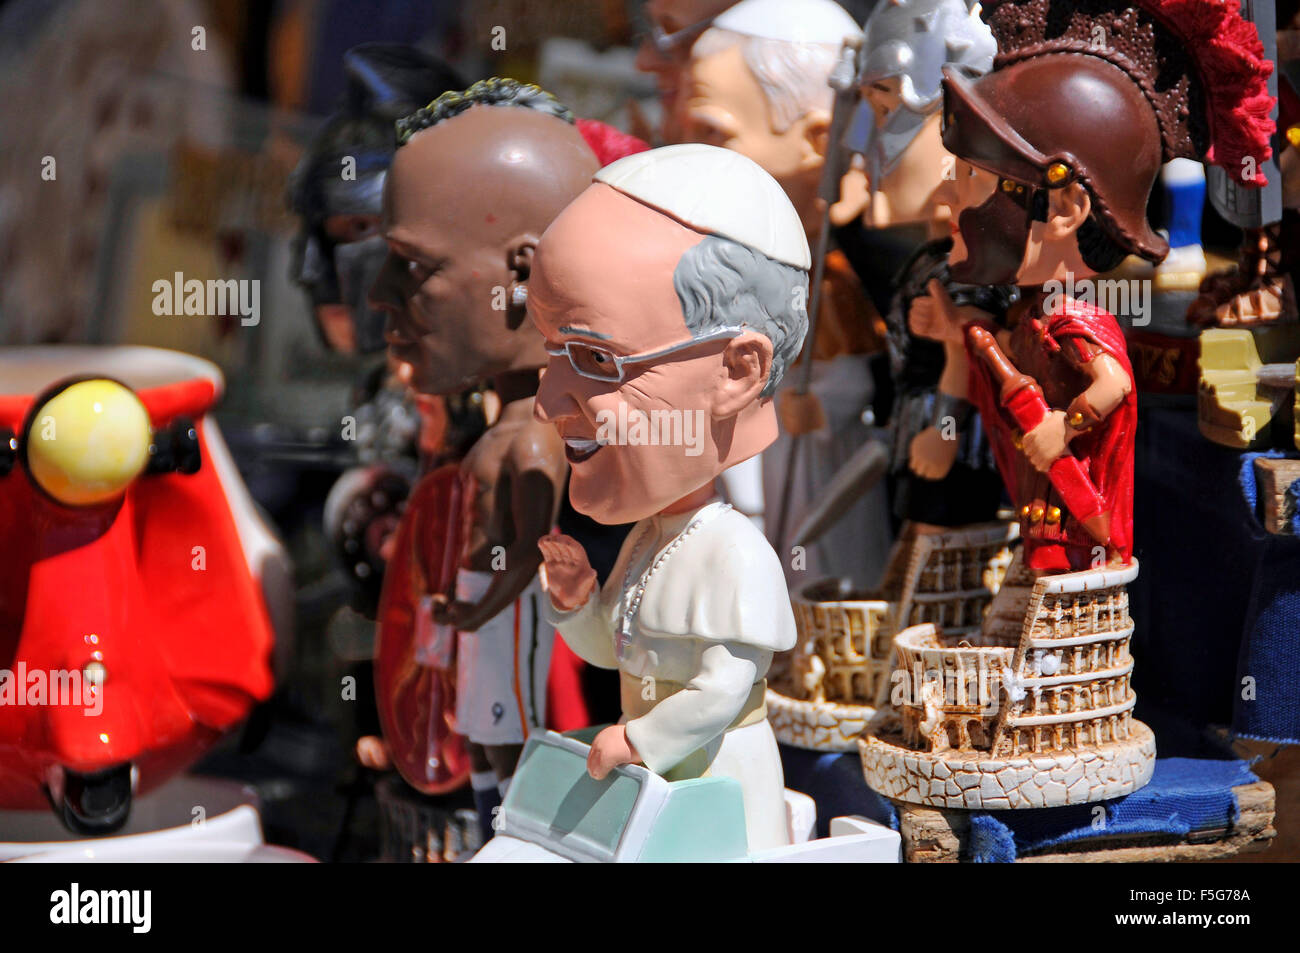 Souvenir-Stall in der Vatikanstadt mit Figuren der Papst Francis, Gladiatoren und Fußballer Balotelli in Rom, Italien Stockfoto